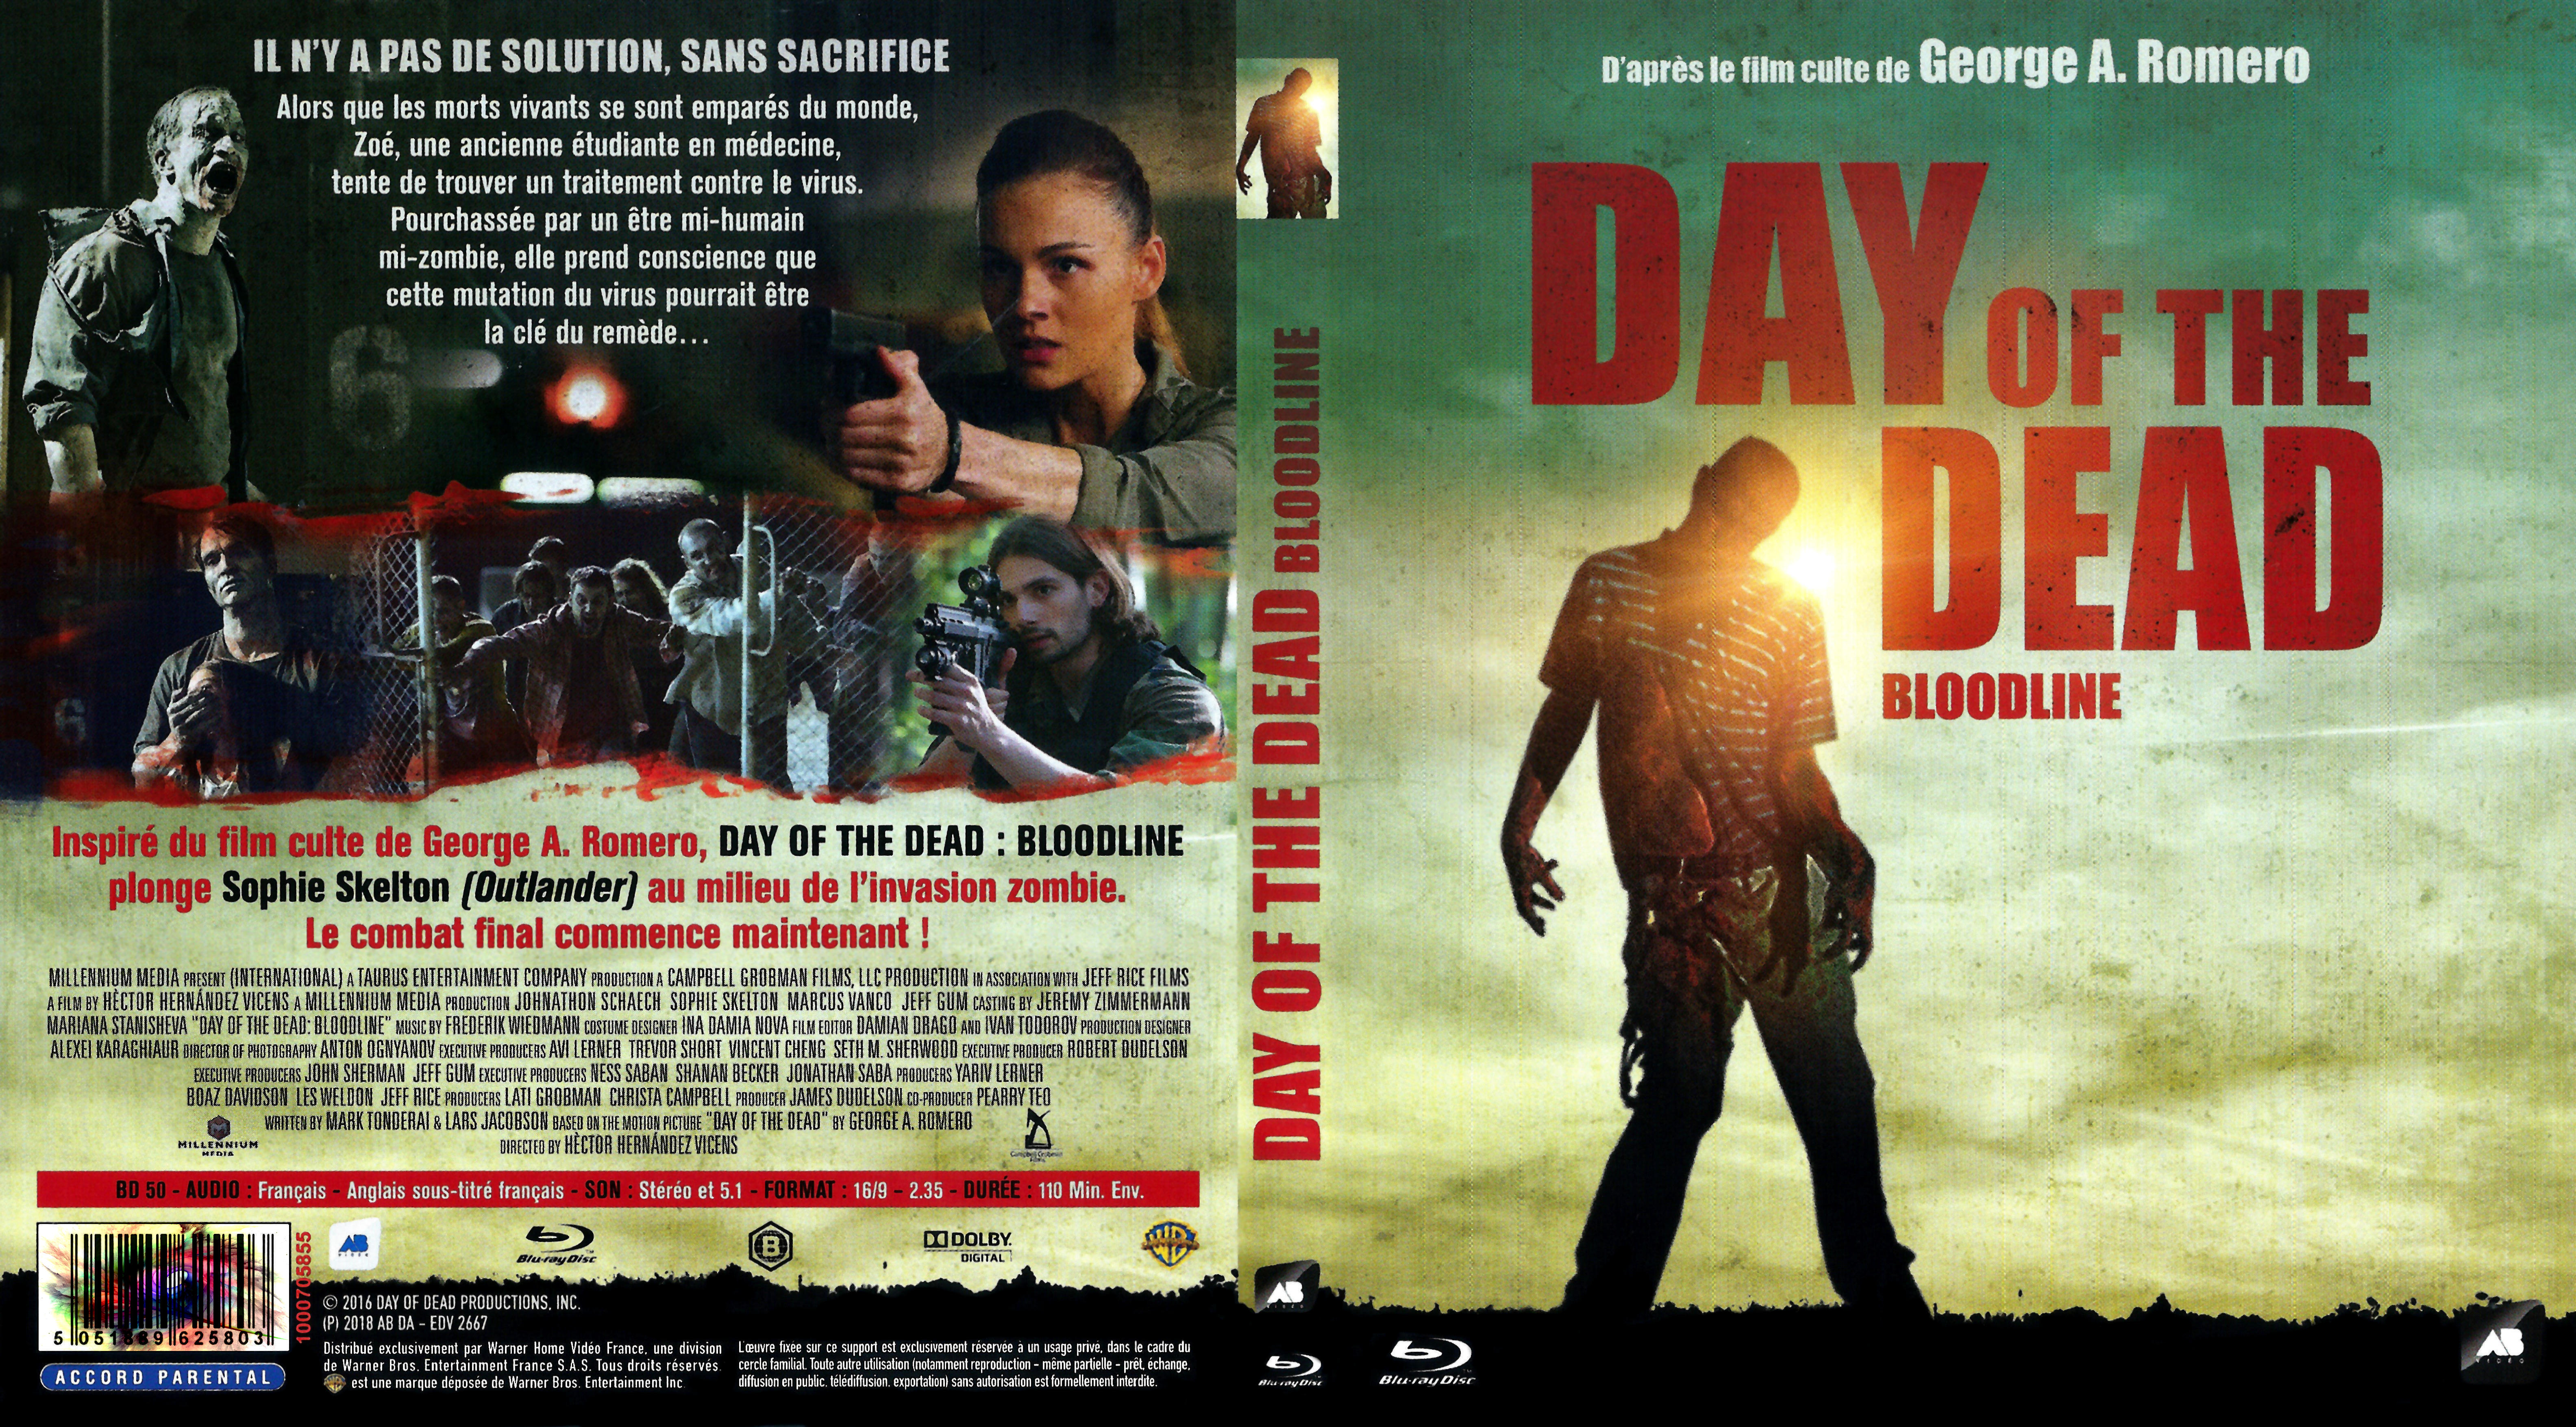 Jaquette DVD Le jour des morts vivants Bloodline (day of the dead) (BLU-RAY)